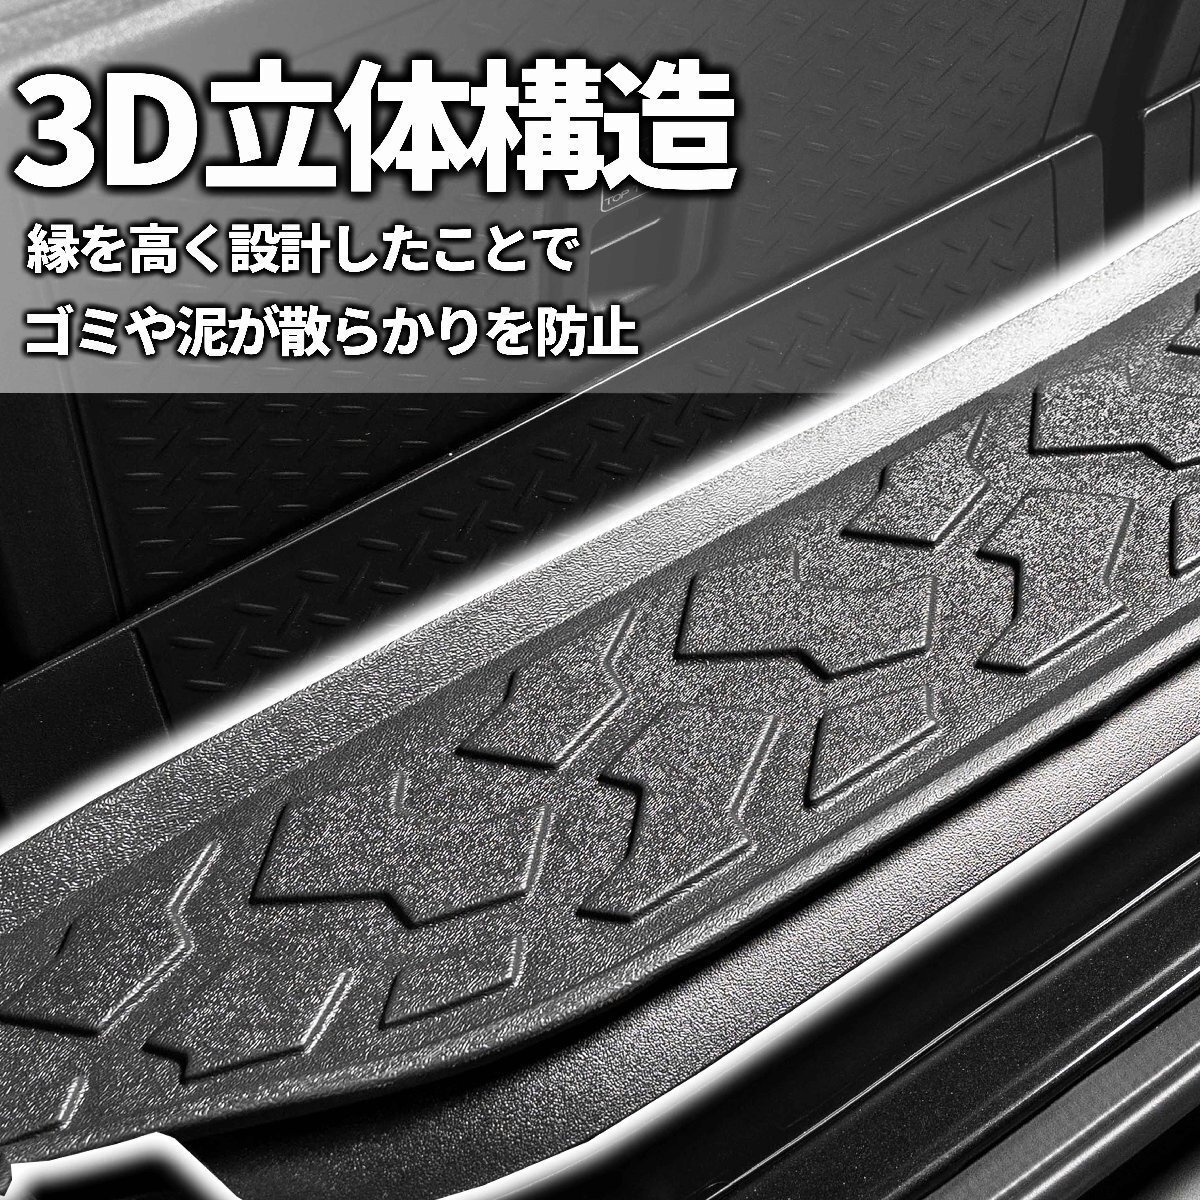  ограниченное количество \\1 старт новая модель Jimny JB64/ Jimny Sierra JB74 3D покрытие пола багажника ( блок образец ) марка машины особый дизайн водонепроницаемый . грязный 